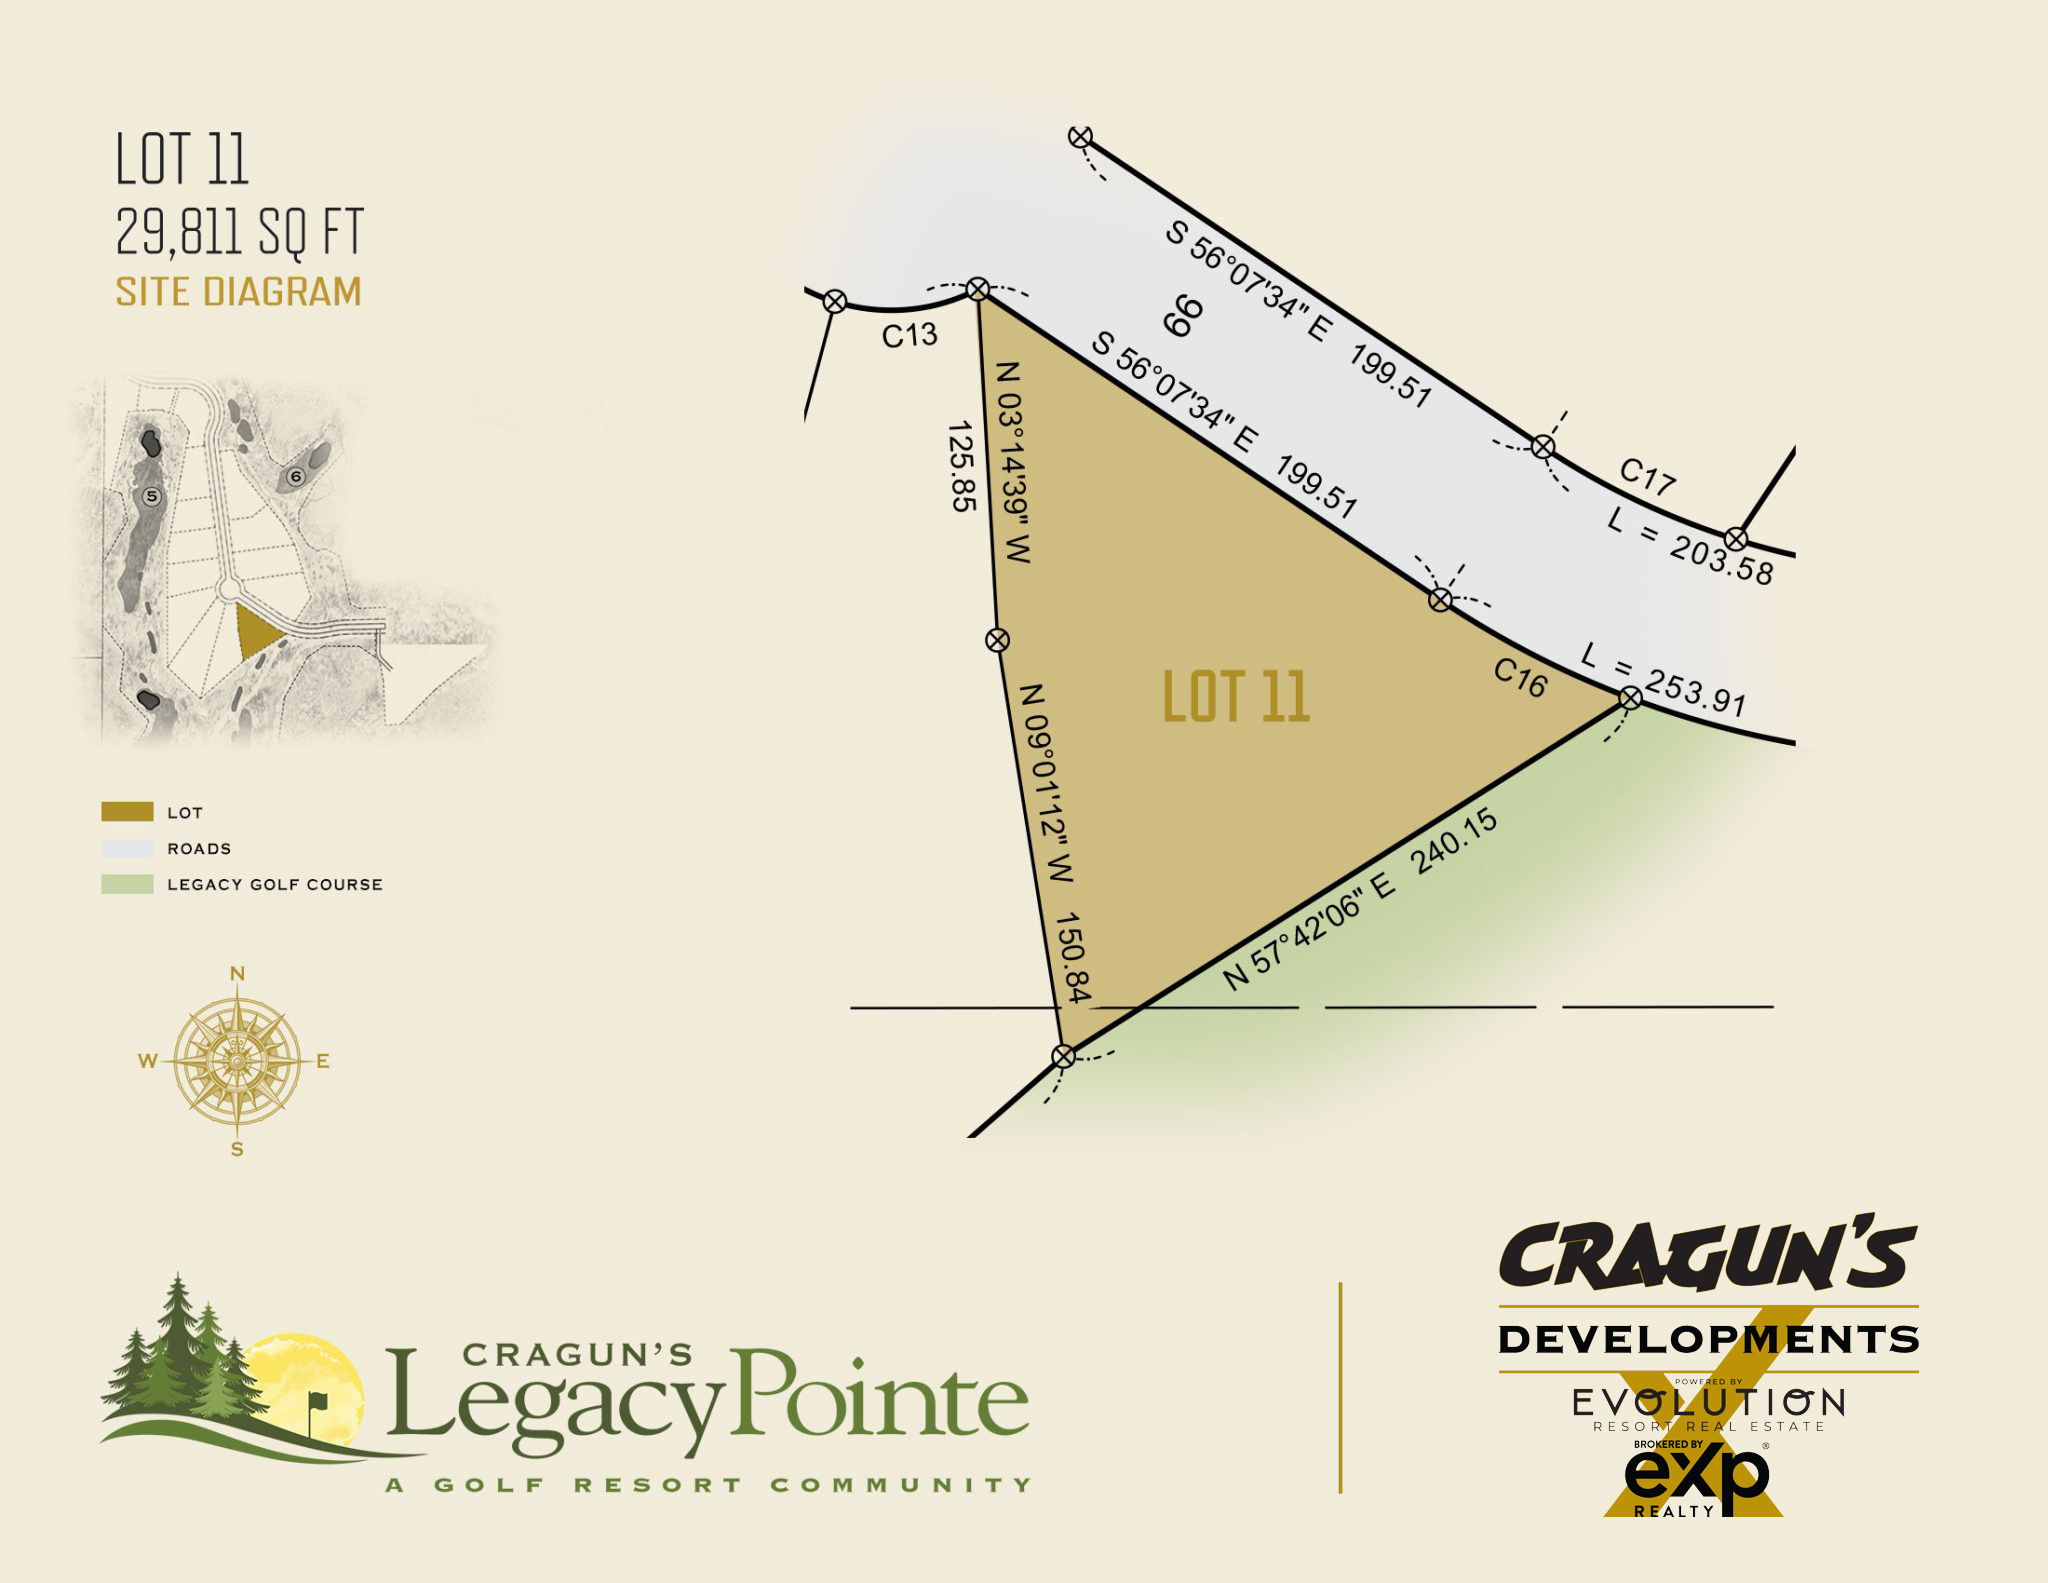 Legacy Pointe Lot 11 at Cragun's Developments in Brainerd, MN